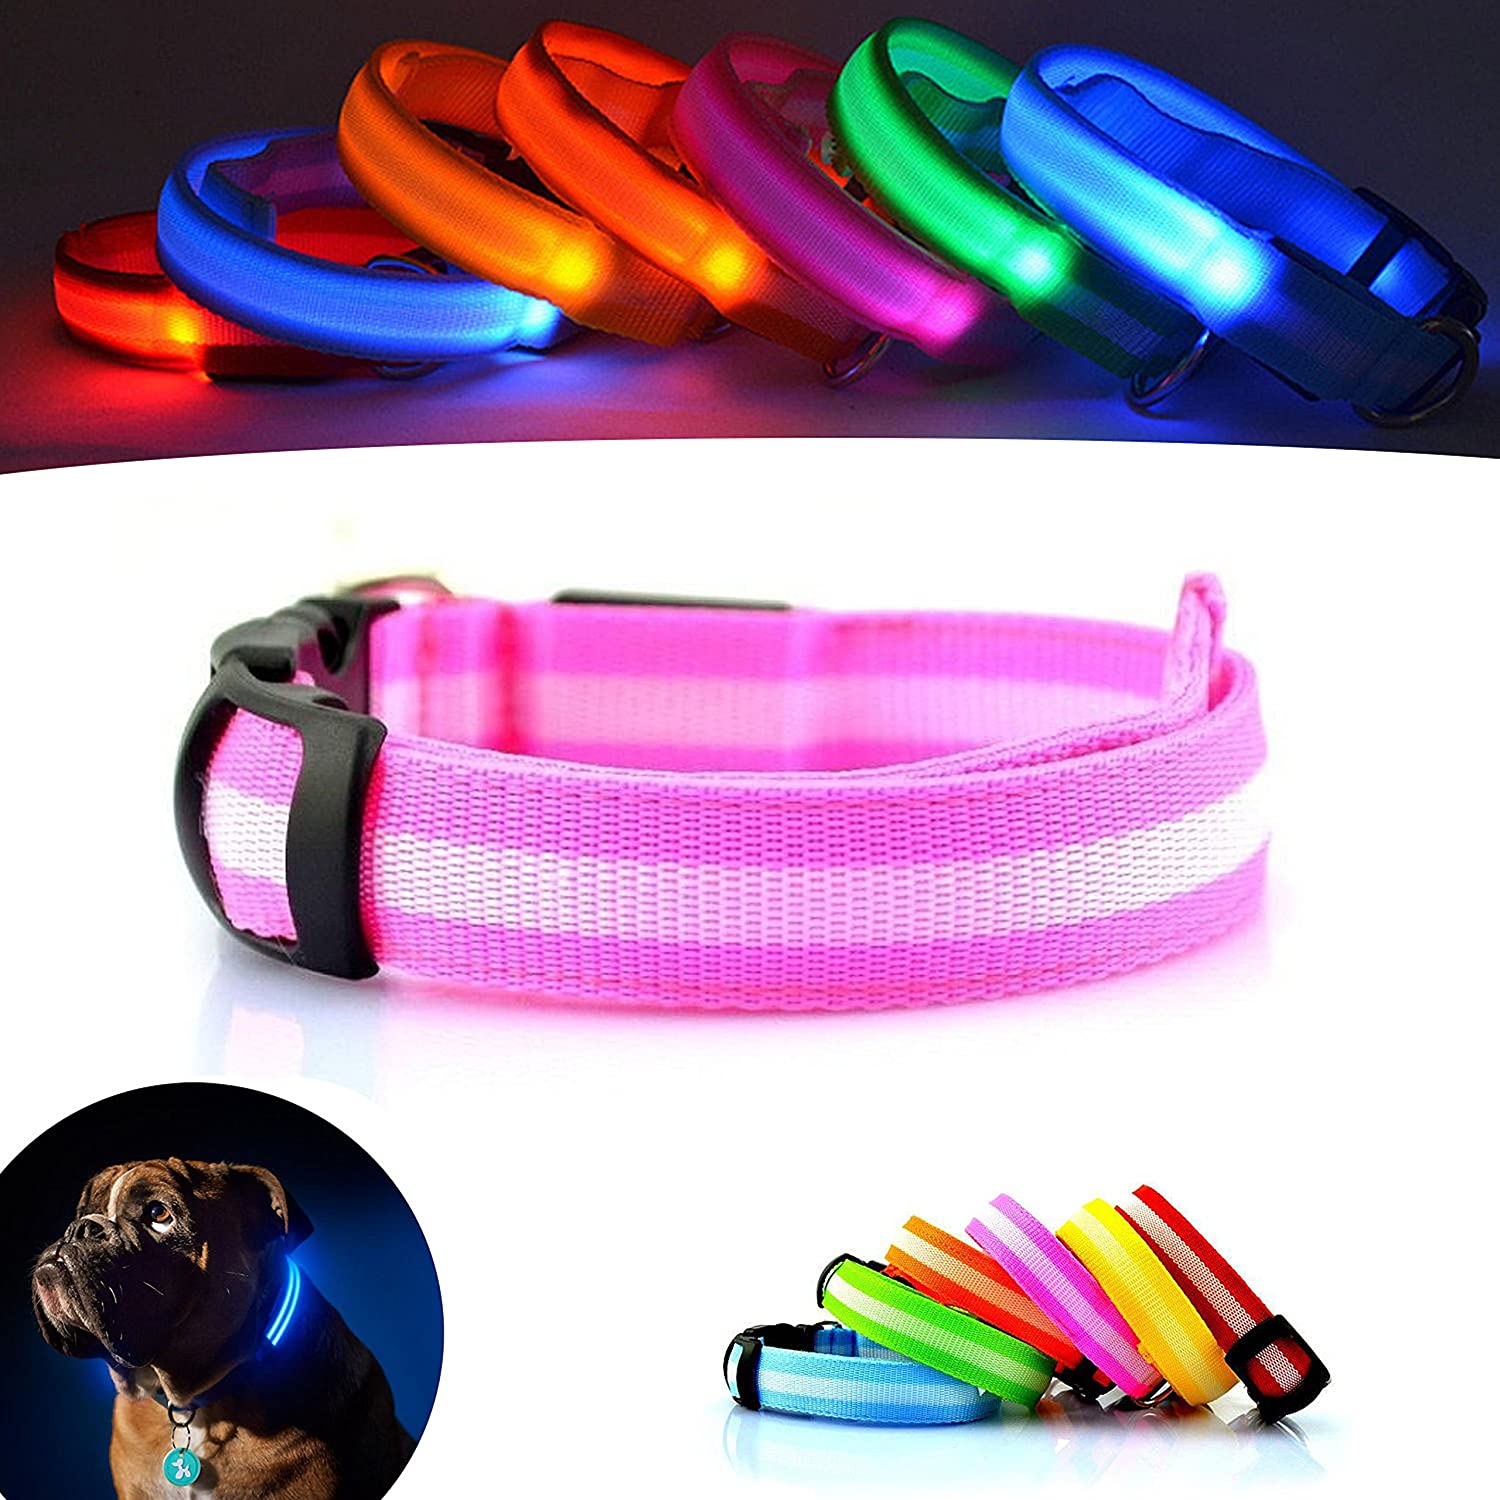  Mejor Perro visibilidad y seguridad – USB Batería LED perro seguridad Collar – LED de pilas – se conecta a dispositivos – no – gran diversión – tu perro es más visible y seguro (ROSA PEQUEÑO) 